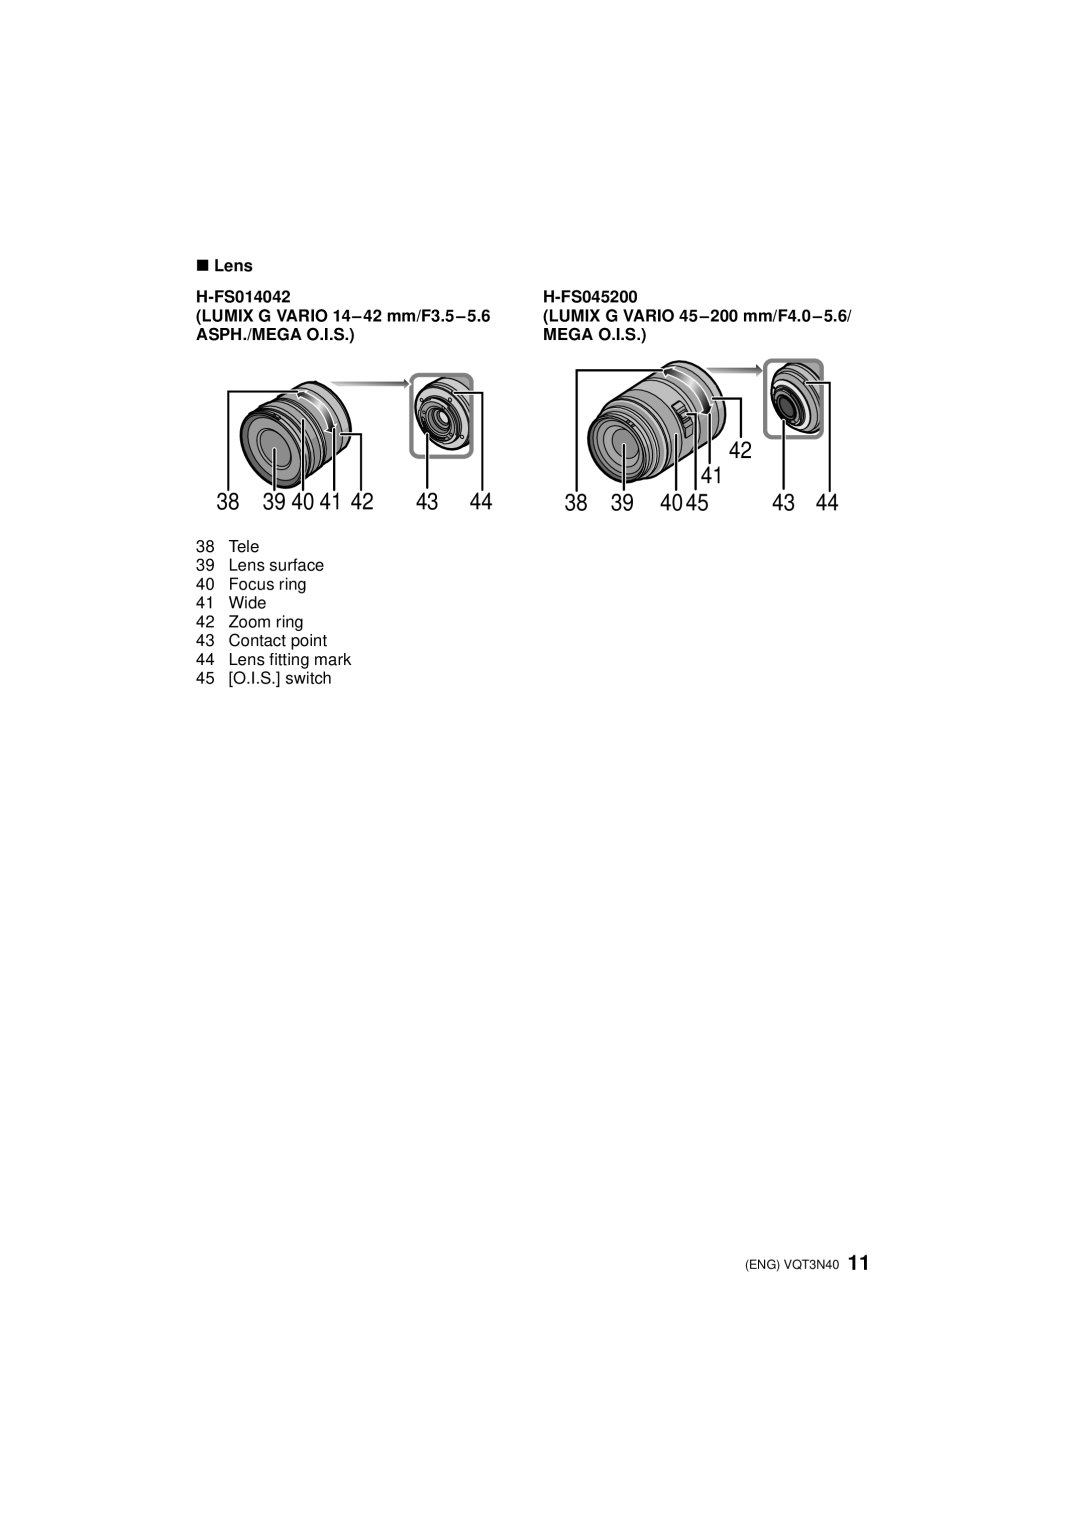 Panasonic DMCG3KK, DMC-G3 ∫ Lens, H-FS014042, H-FS045200, LUMIX G VARIO 14-42 mm/F3.5-5.6, Asph./Mega O.I.S, 39 40 41 